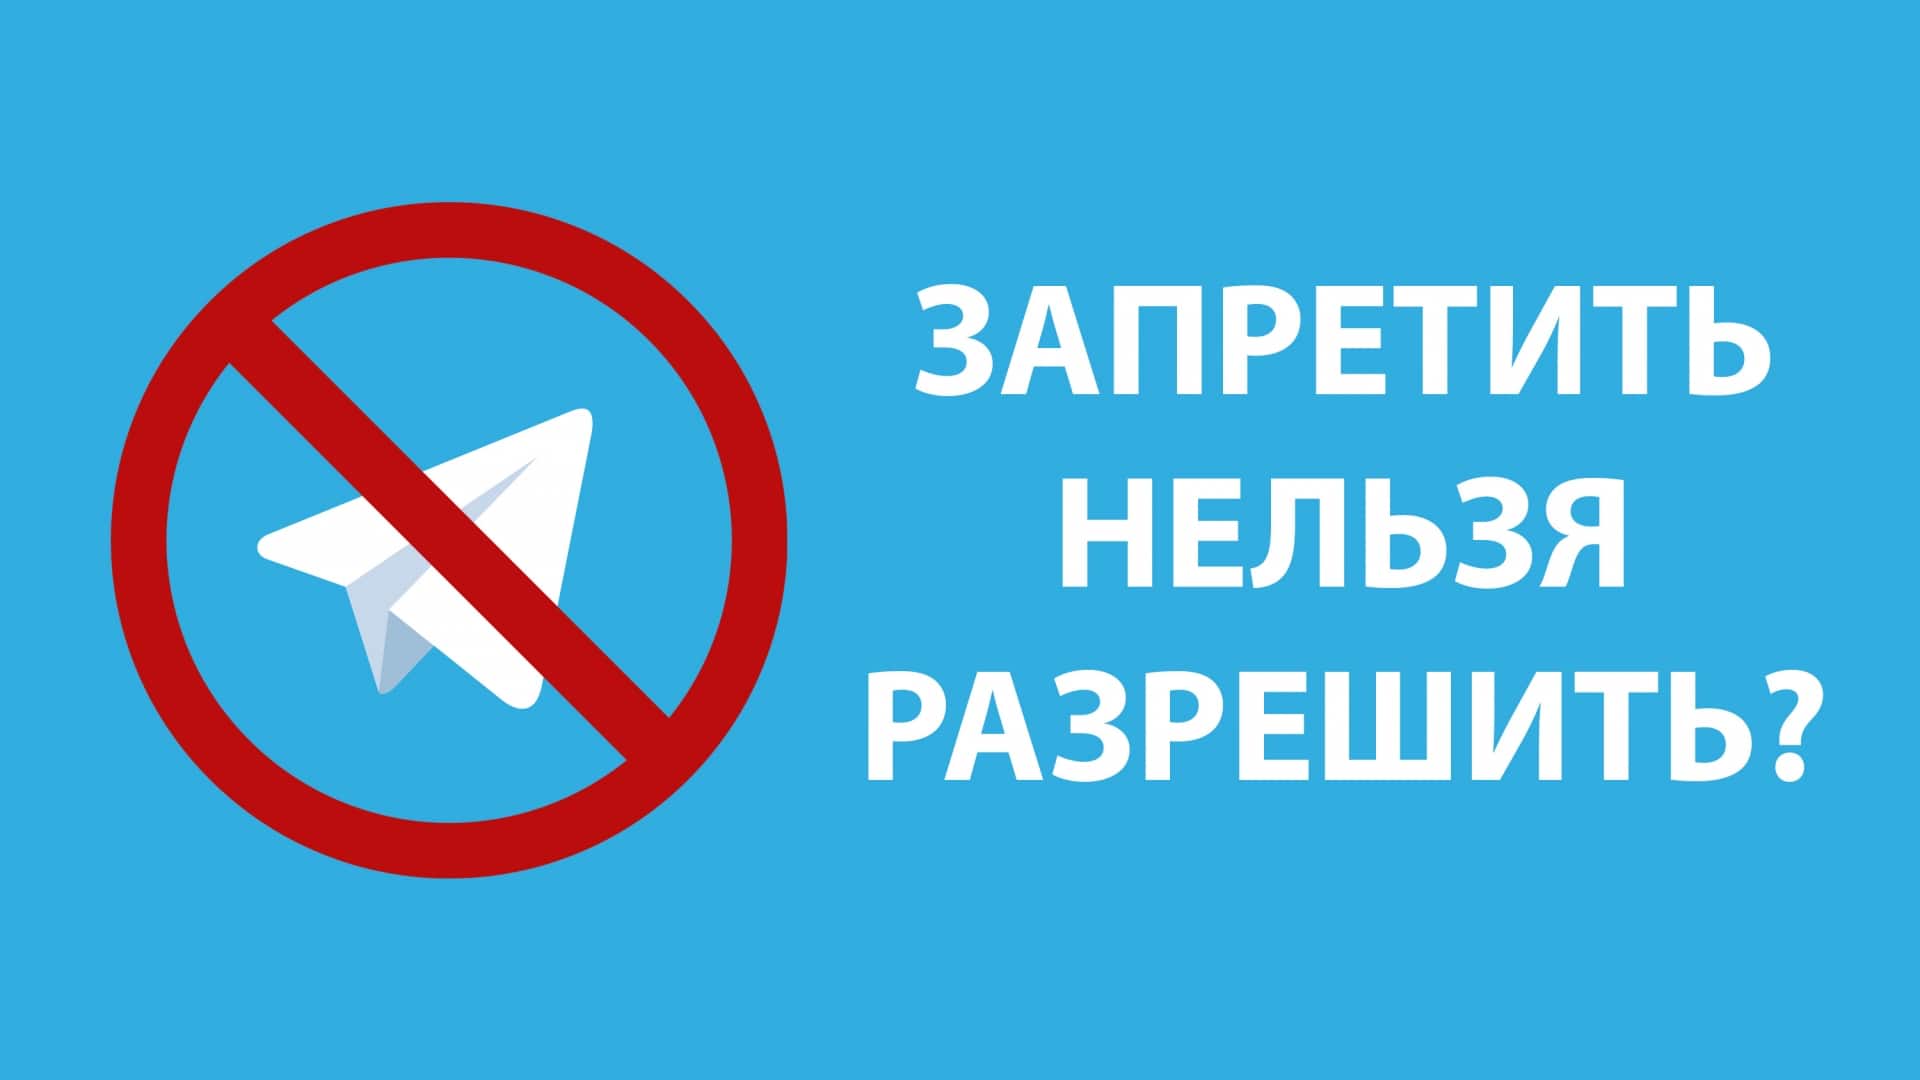 Telegram allow or prohibit